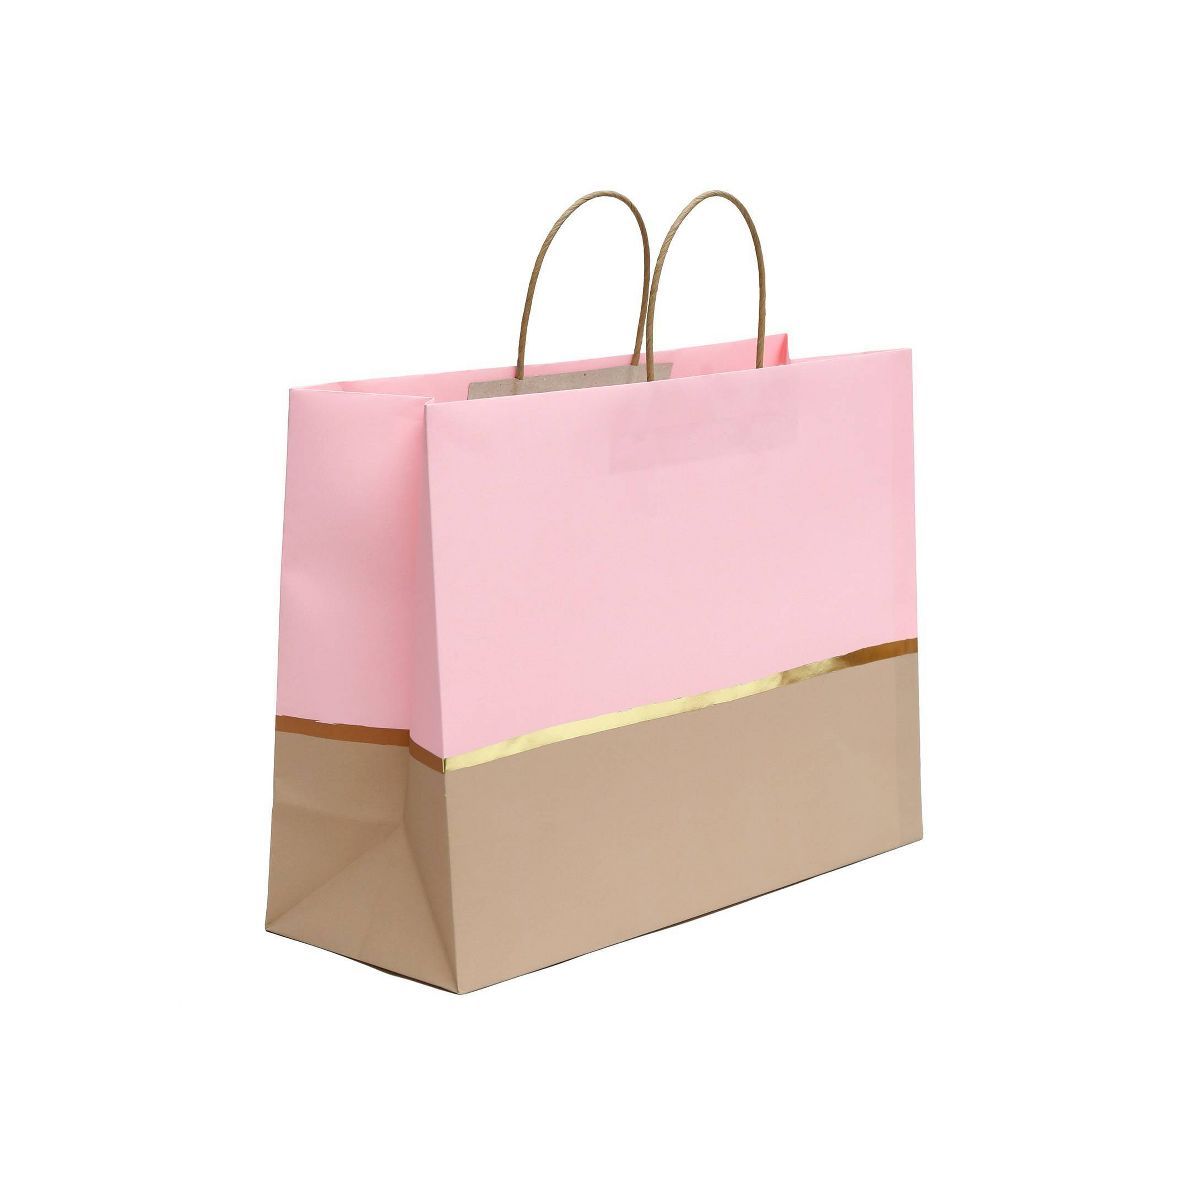 XL Vogue Gift Bag with Gold Foil List Pink - Spritz™ | Target